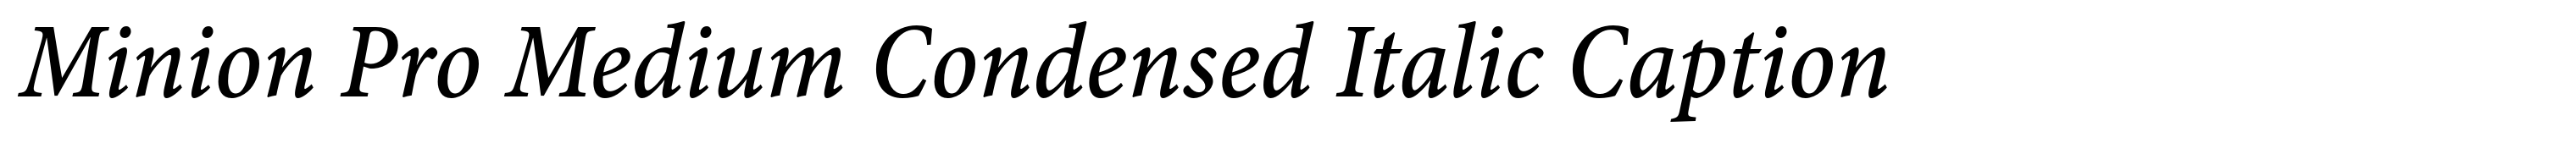 Minion Pro Medium Condensed Italic Caption